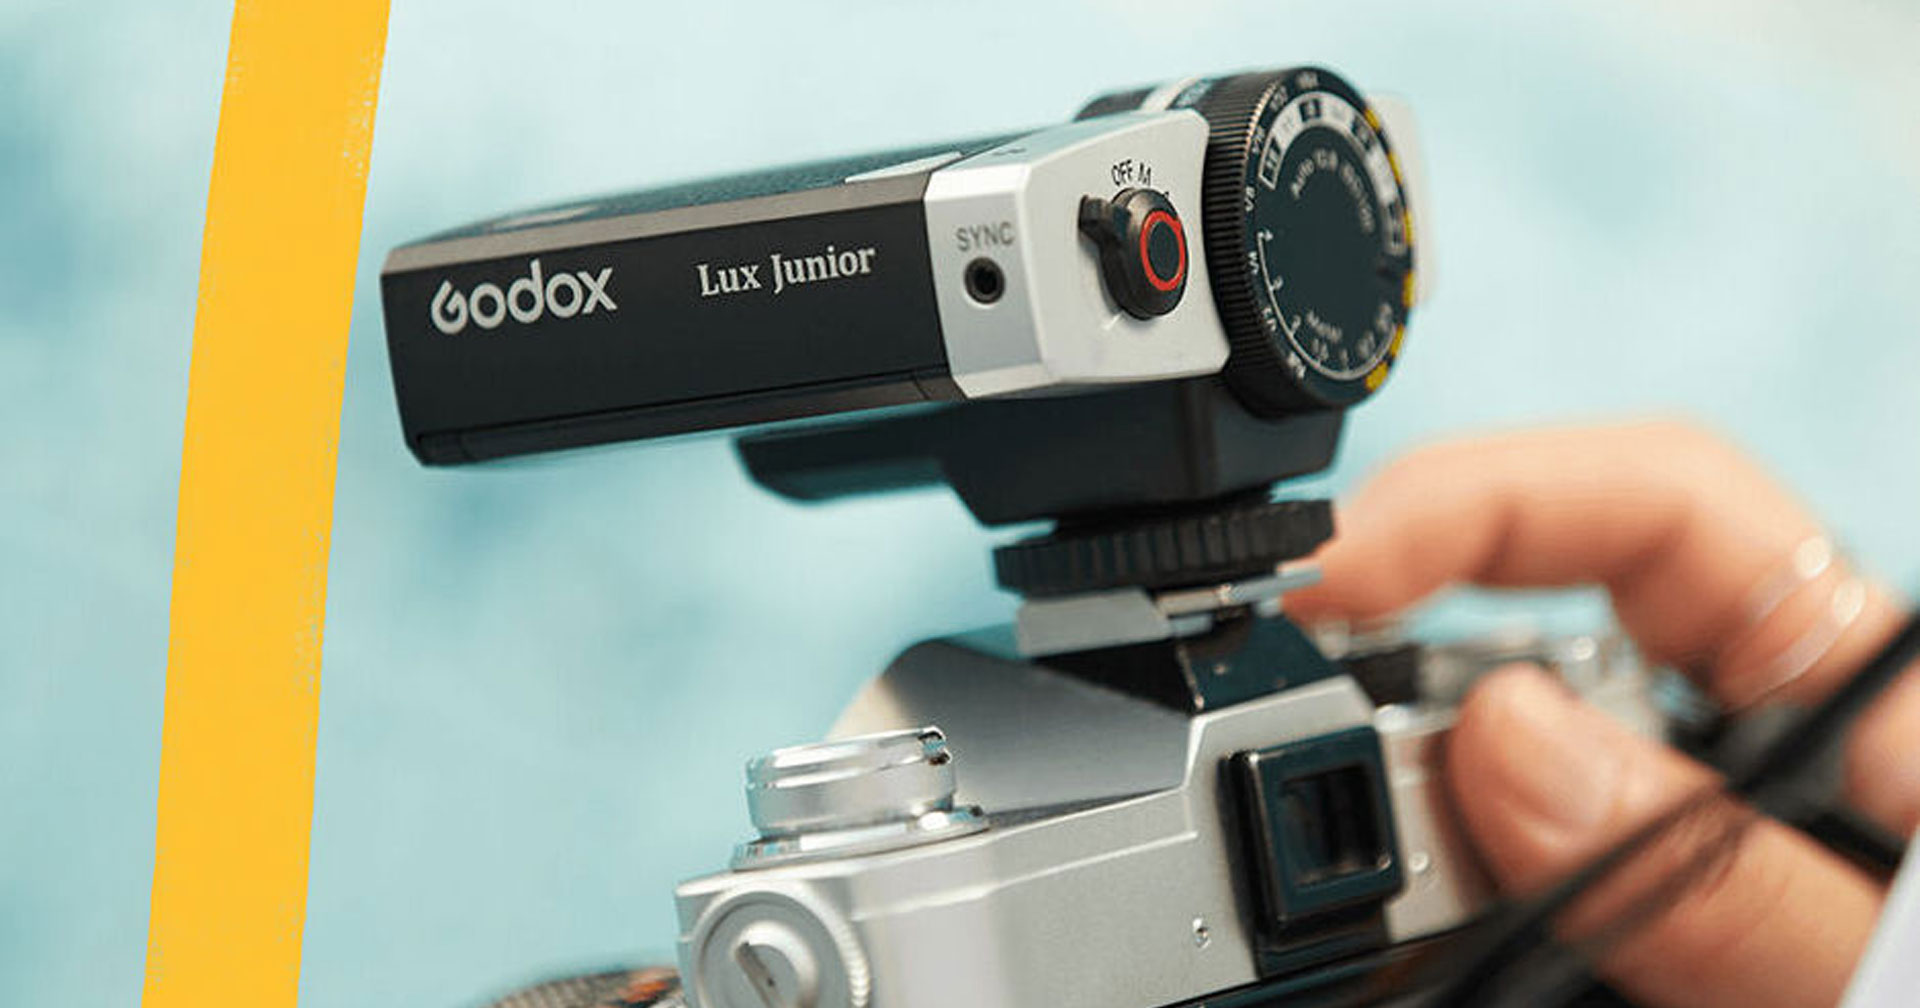 เปิดตัว Godox Lux Junior แฟลชทรง Retro หน้าตาหล่อ ใช้ได้ทั้งฟิล์มและดิจิทัล